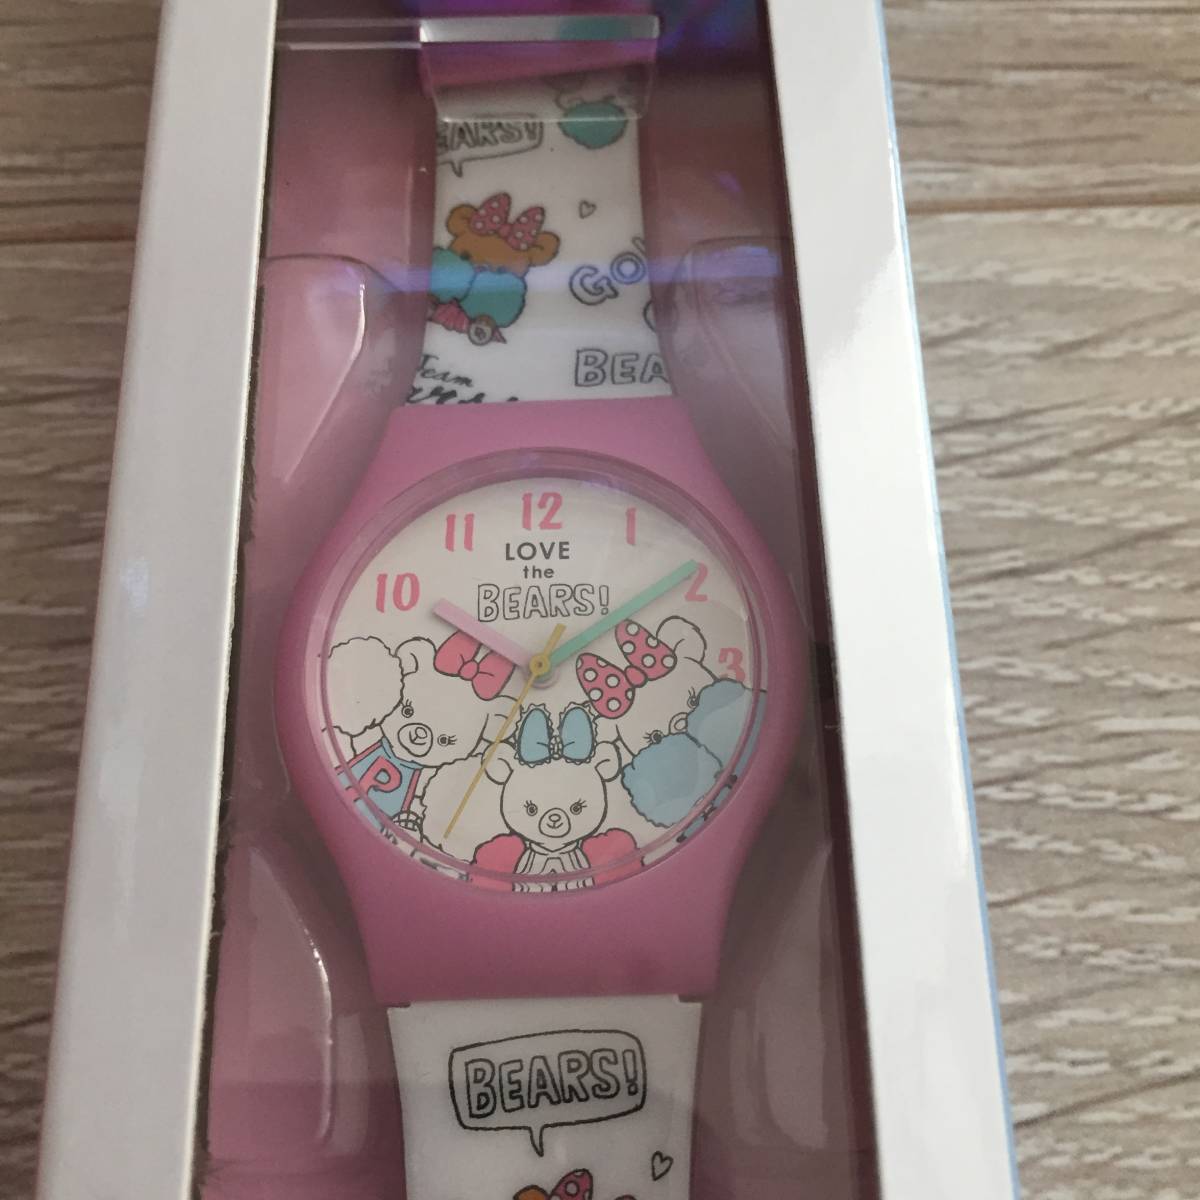  UniBearSity наручные часы новый товар не использовался в кейсе пуховка .- пудинг Cheer Disney магазин 